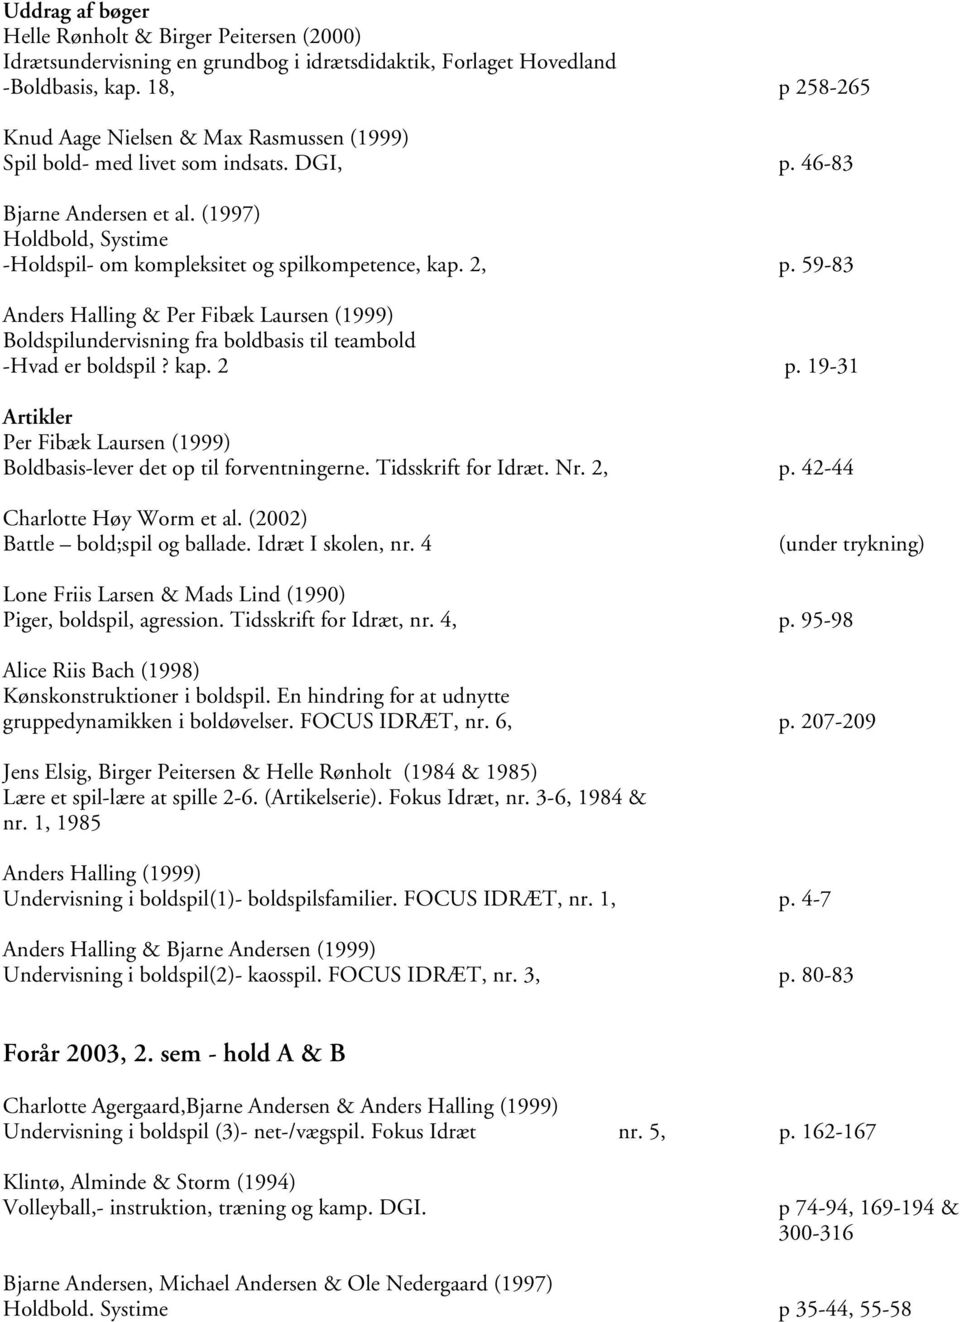 (1997) Holdbold, Systime -Holdspil- om kompleksitet og spilkompetence, kap. 2, p. 59-83 Anders Halling & Per Fibæk Laursen (1999) Boldspilundervisning fra boldbasis til teambold -Hvad er boldspil?